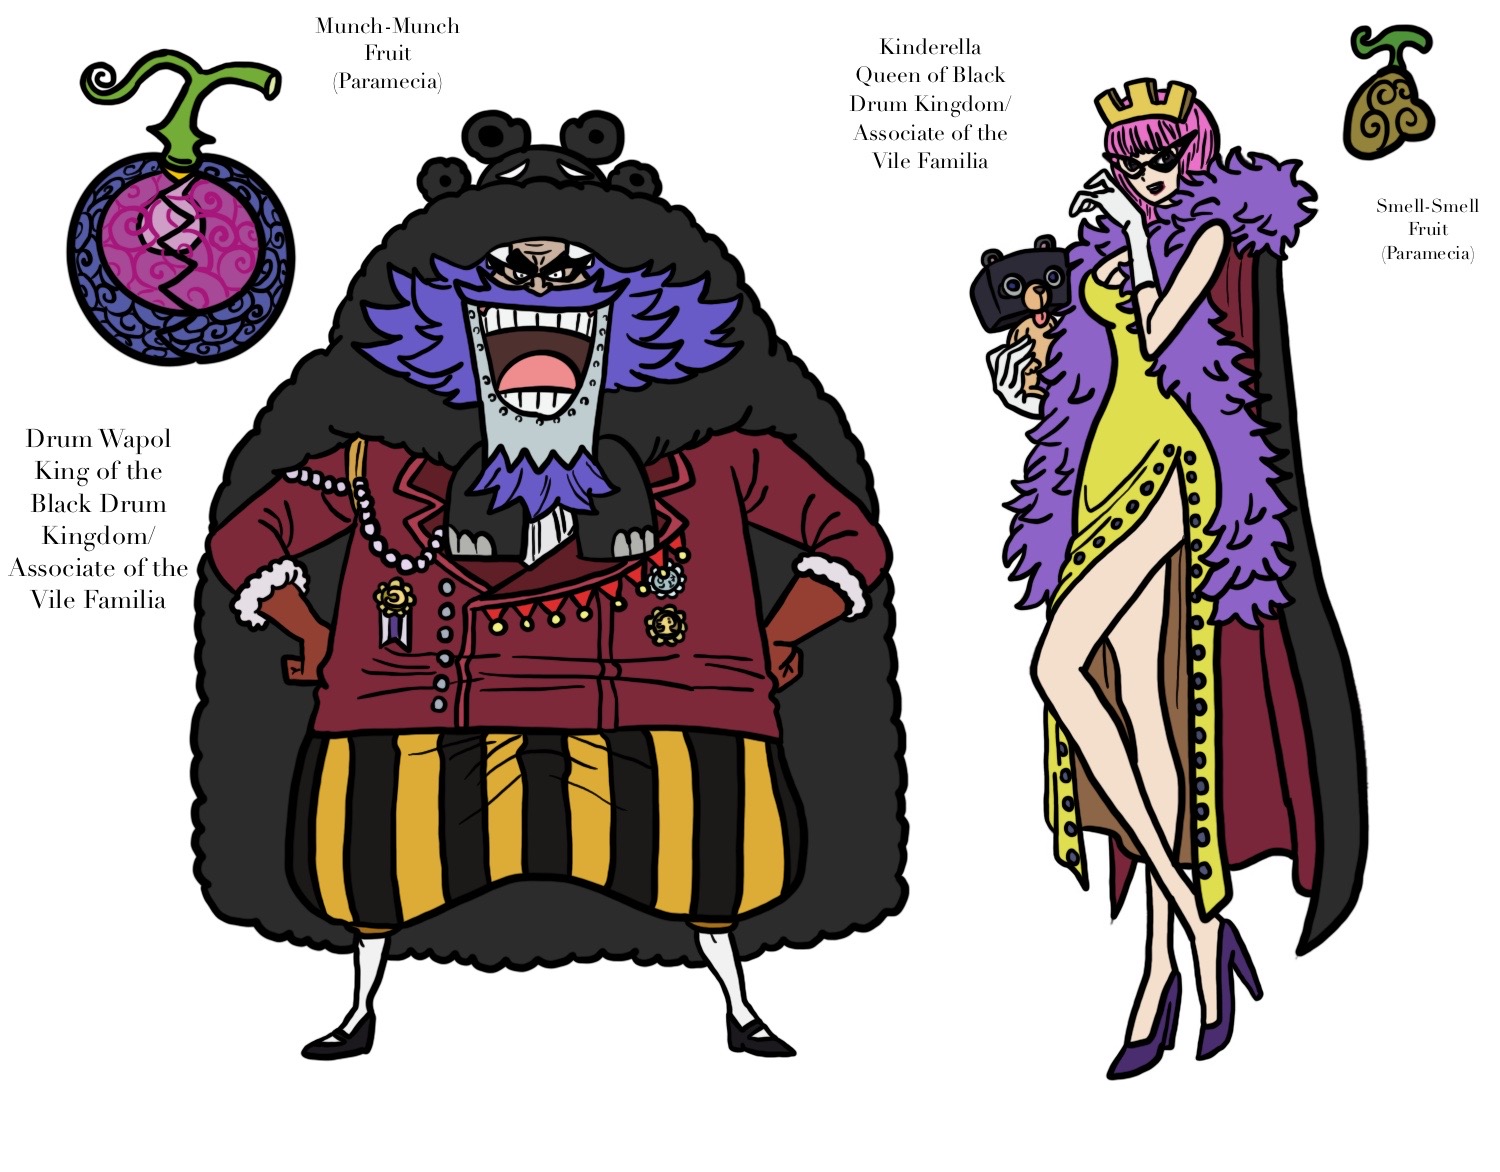 King y Queen // One Piece Ch925 by goldenhans on DeviantArt